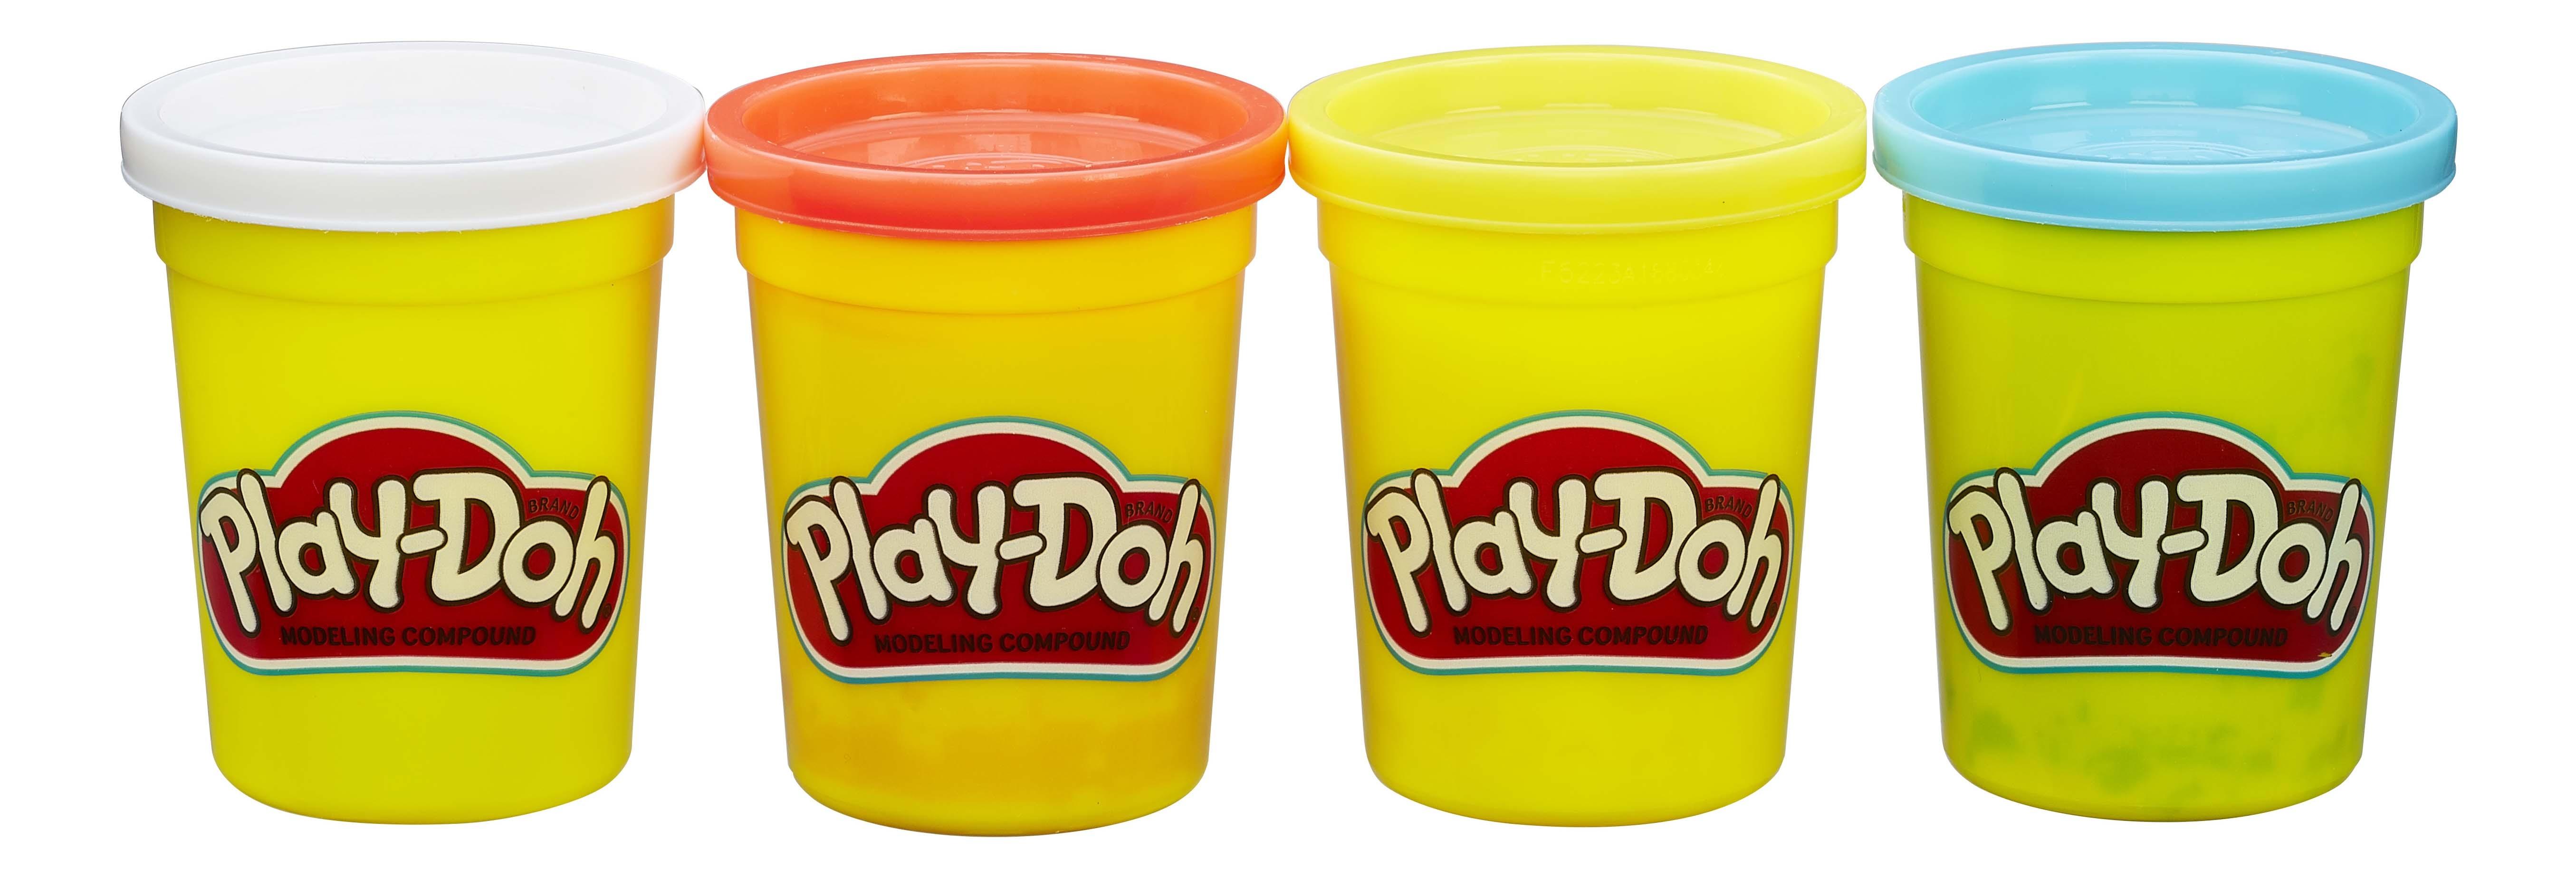 Масса для лепки Play-doh набор 4 банки b5517 b6508